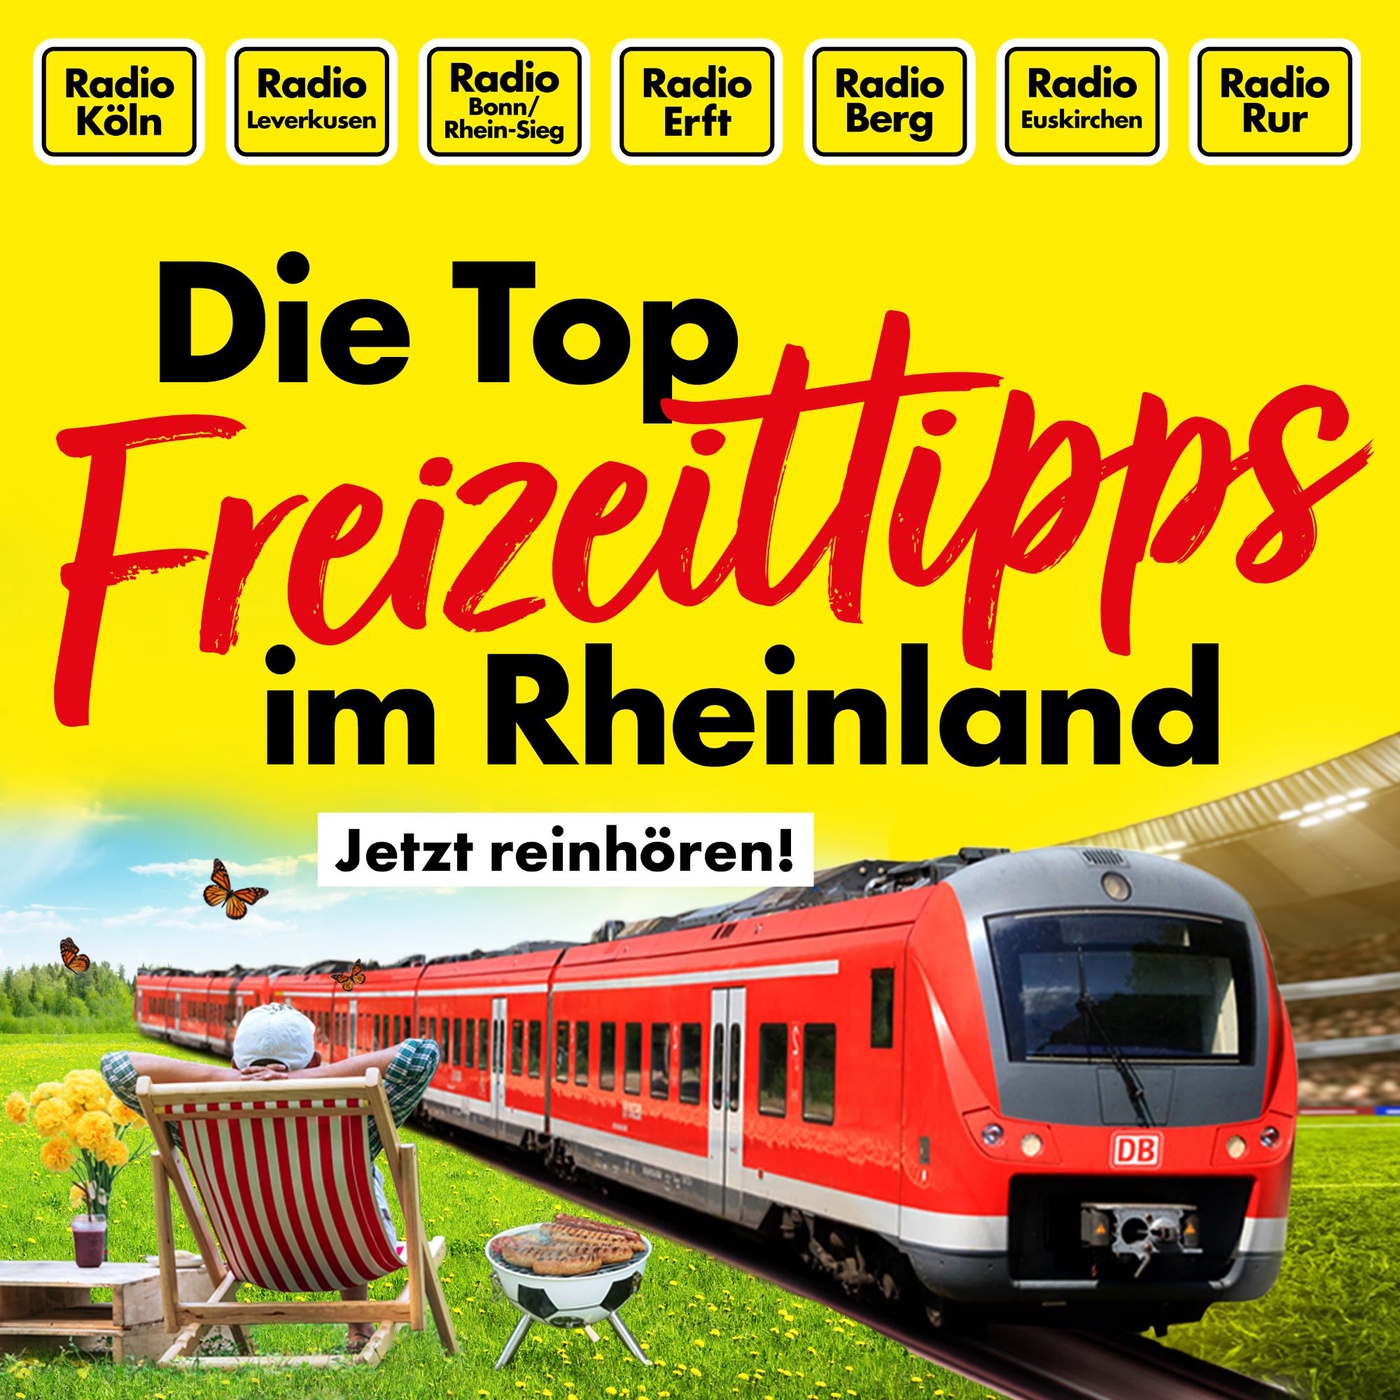 Die Top Freizeittipps im Rheinland